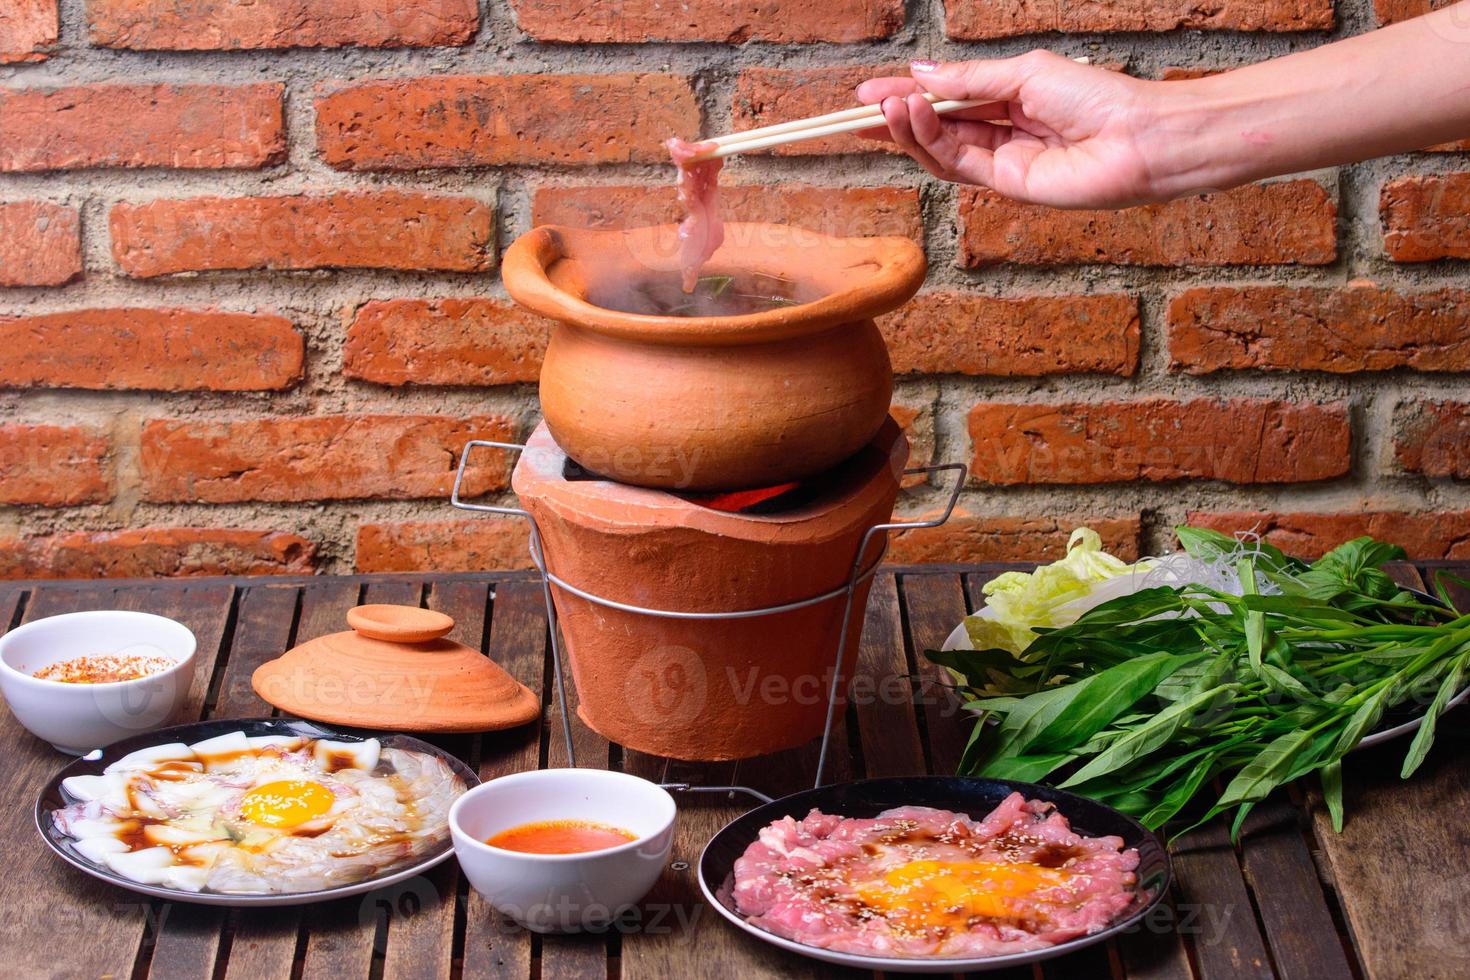 varm pott thai stil. varm pott med klar soppa i de lera matlagning pott. foto